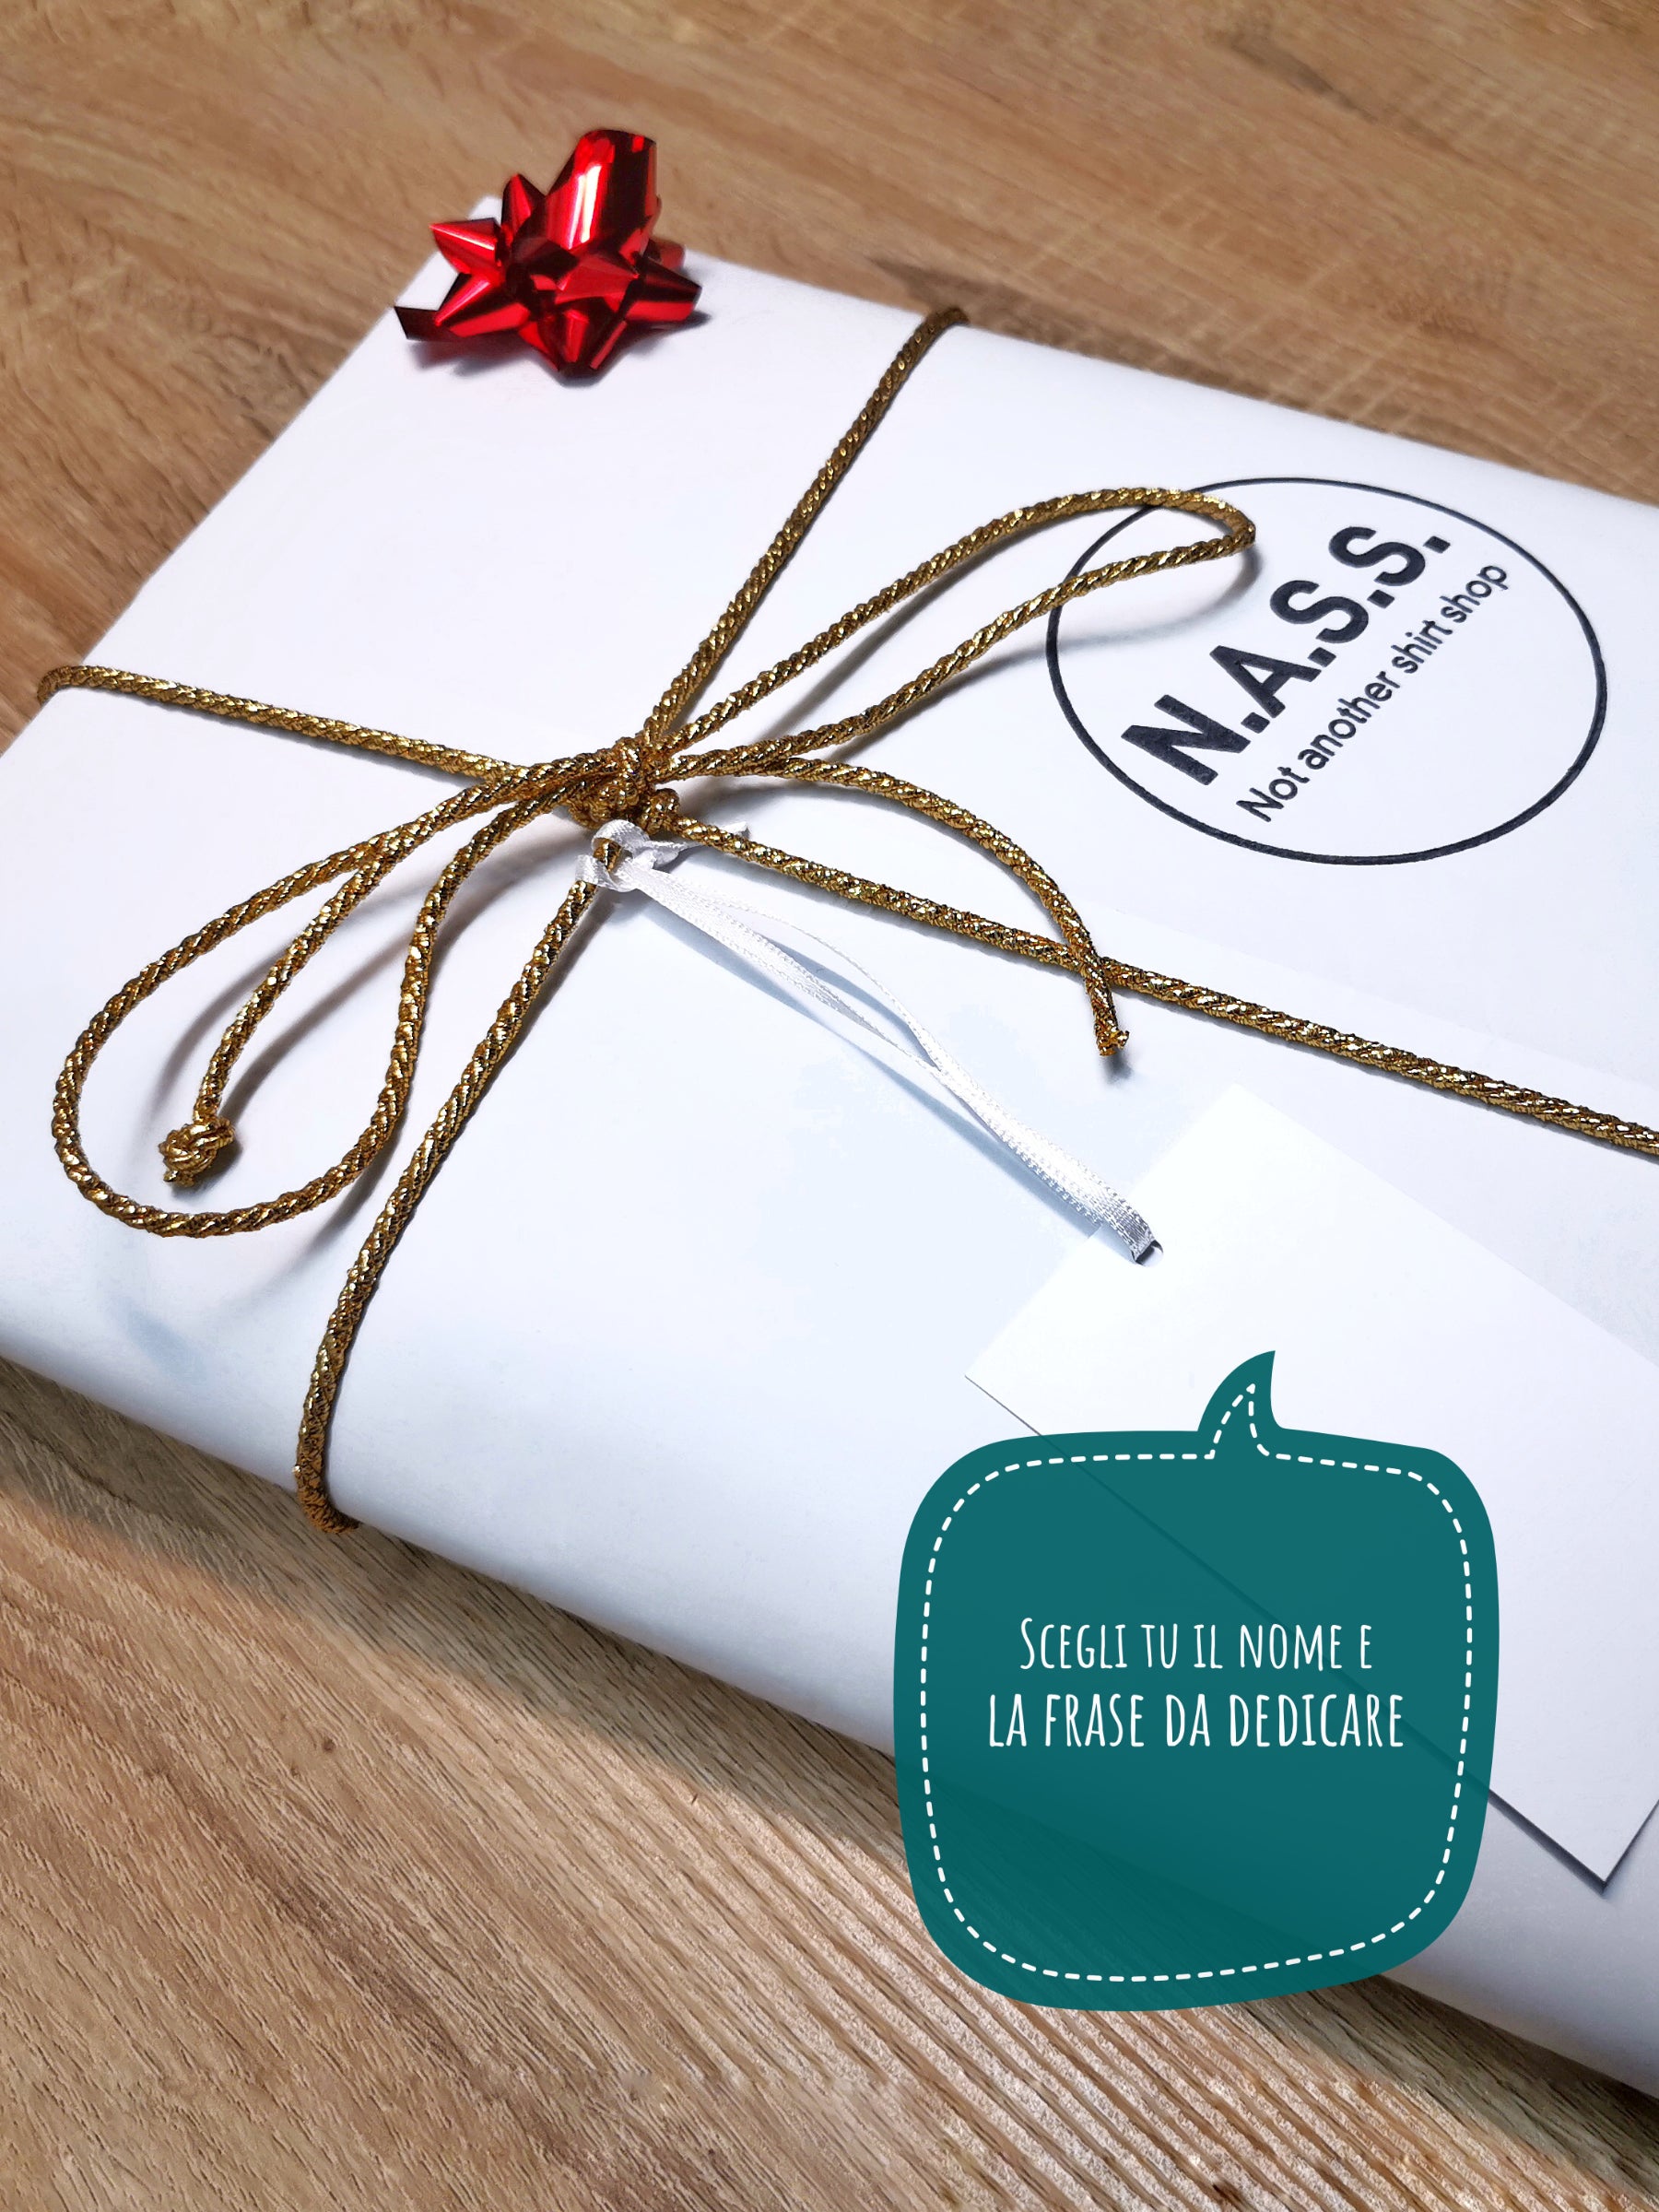 Confezione regalo N.A.S.S. - Christmas edition